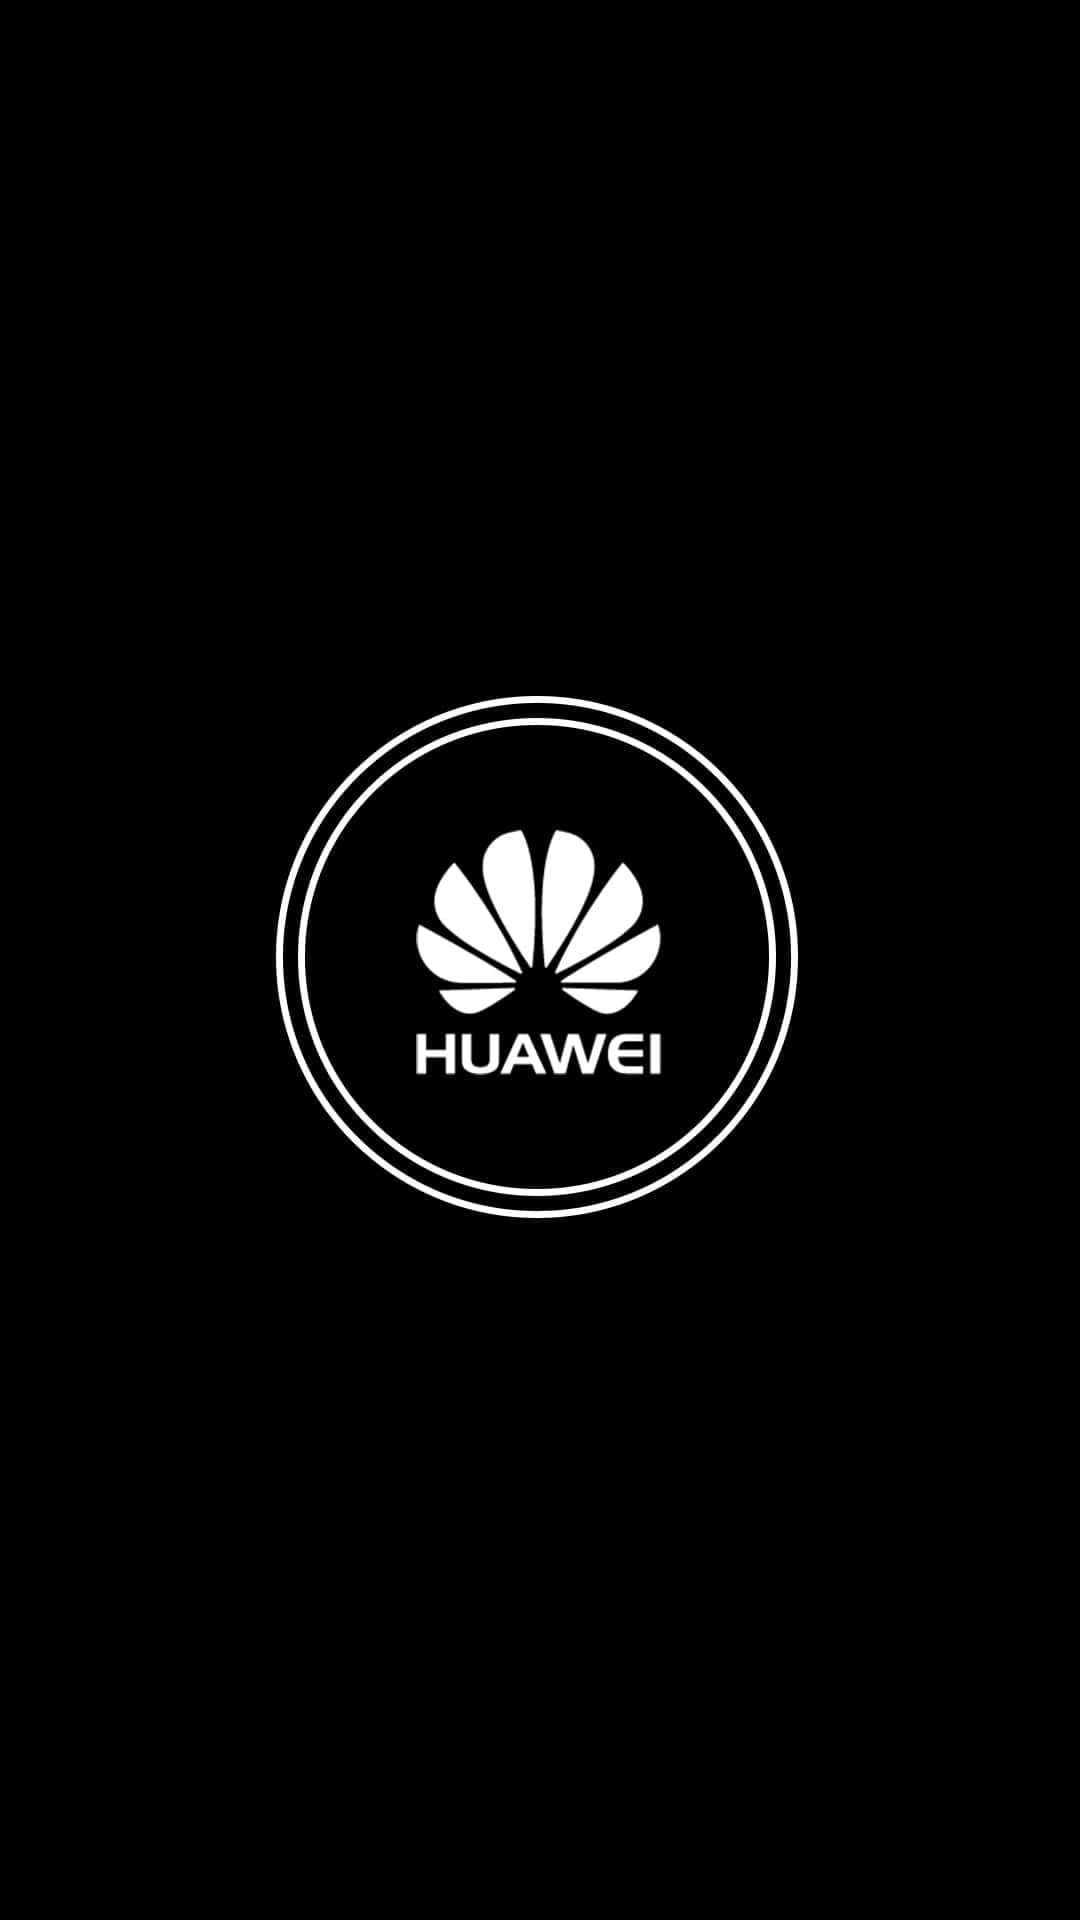 Enskakternet Huawei Powerhouse Med En Indlejret Diskret Blå Nuance.